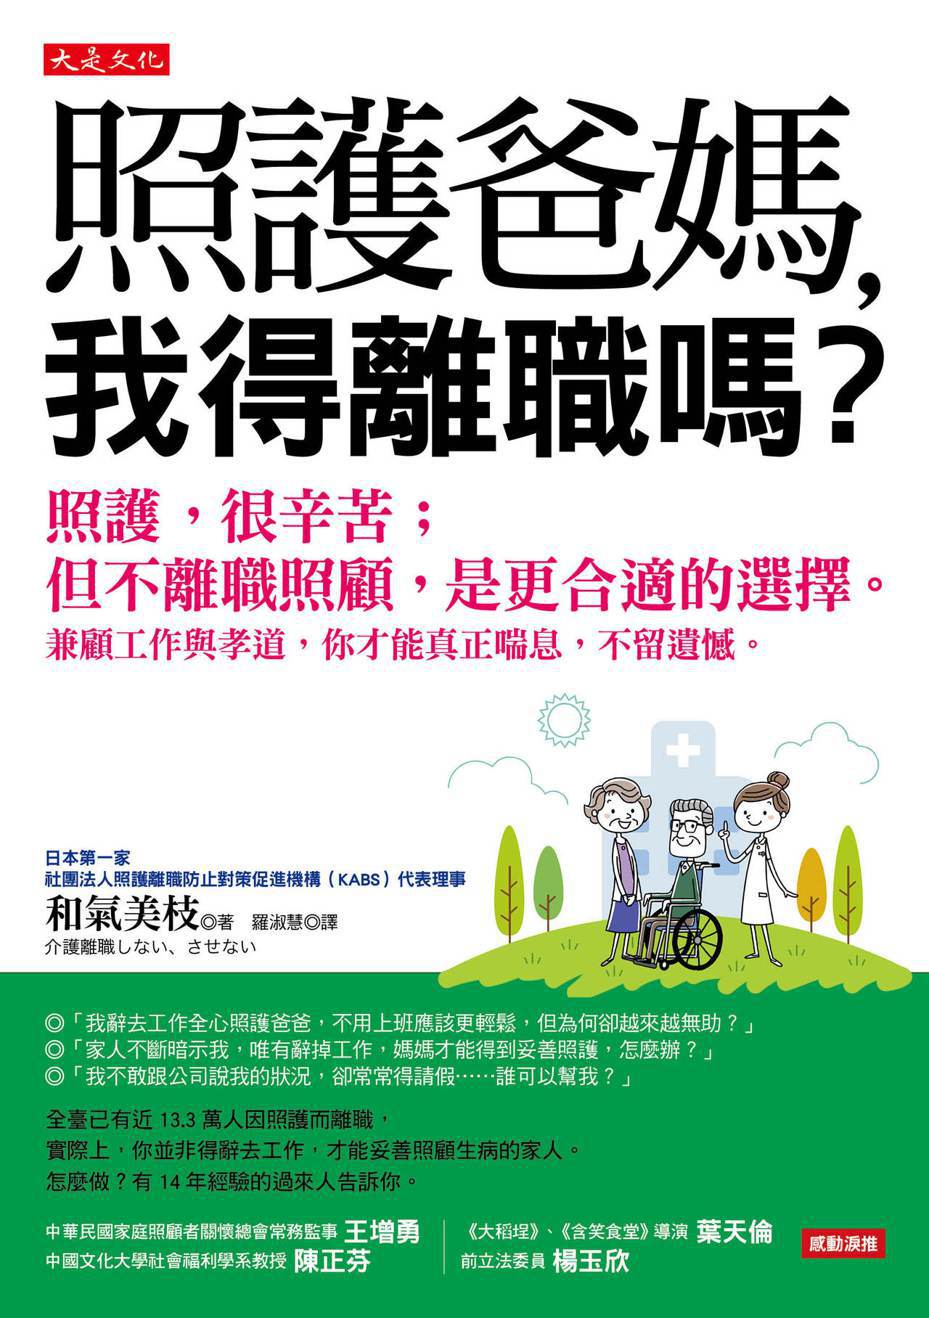 日本討論照護離職議題的話題書 「照護爸媽，我得離職嗎？」圖/大是文化提供